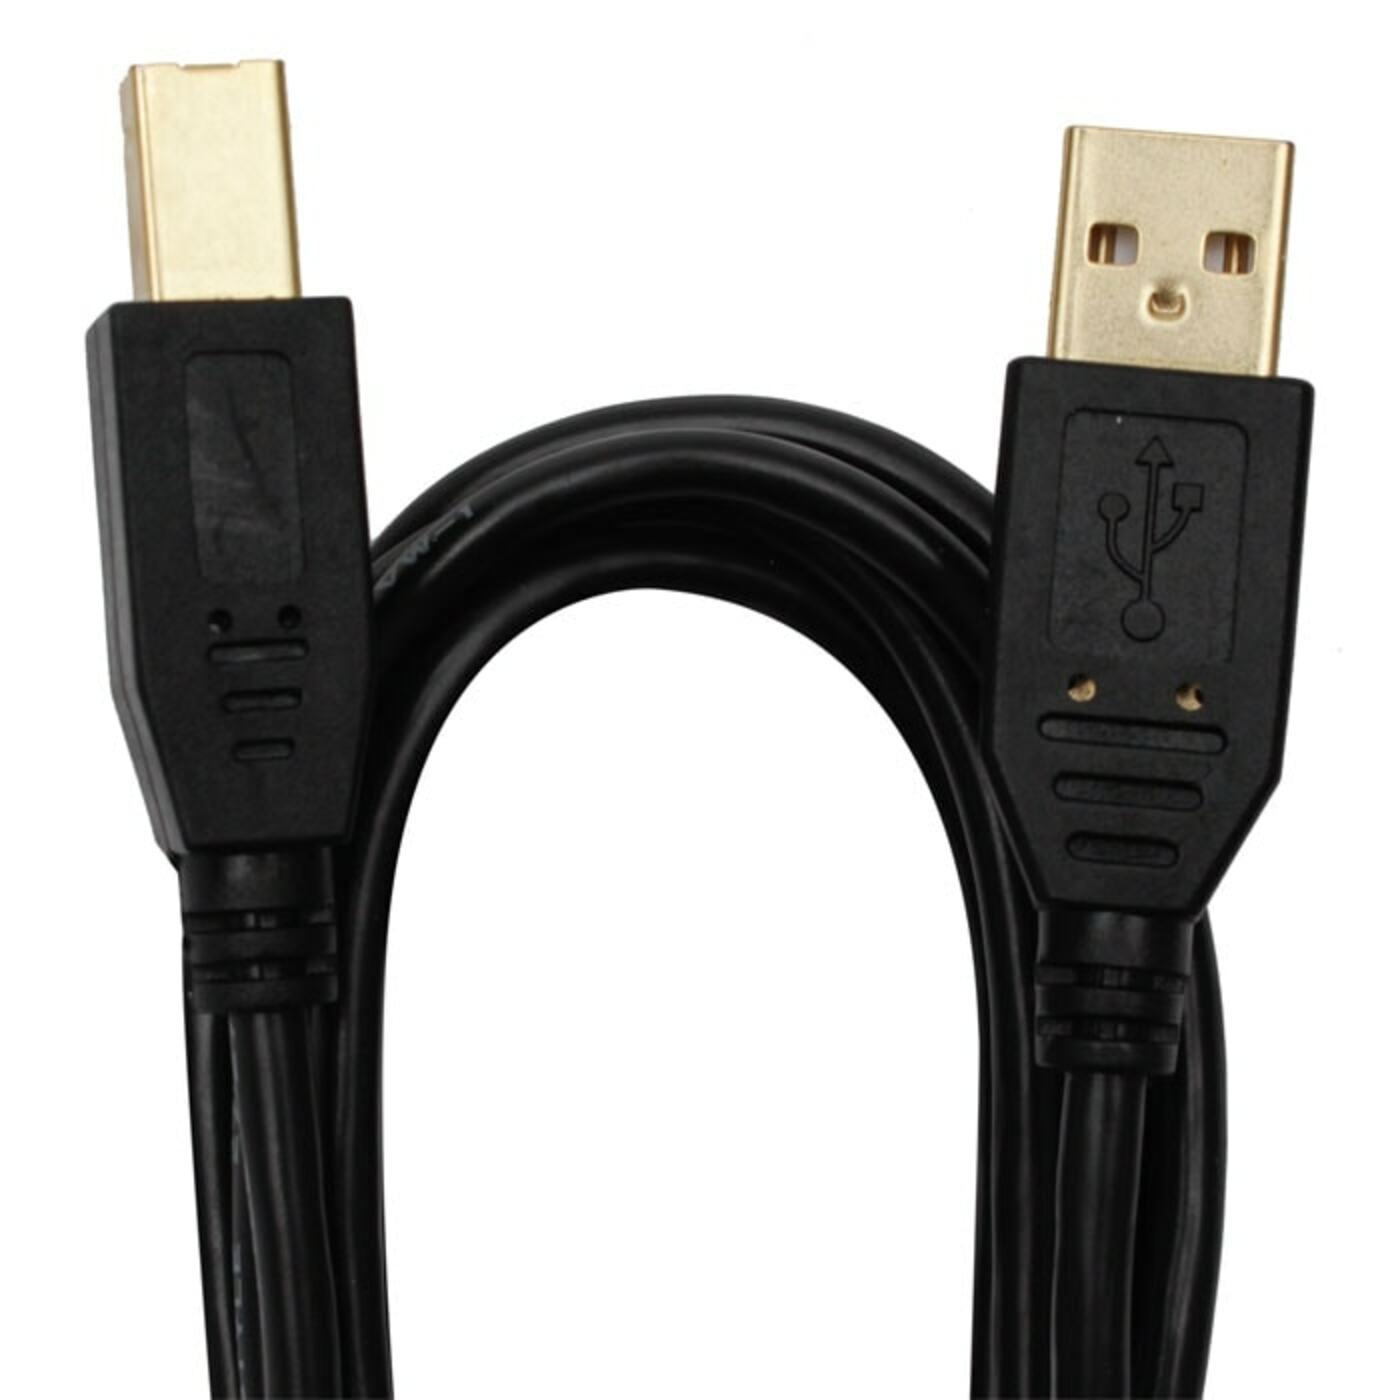 Cable BESTCOM USB 2.0 a USB-B para impresora de 1.83 Metros